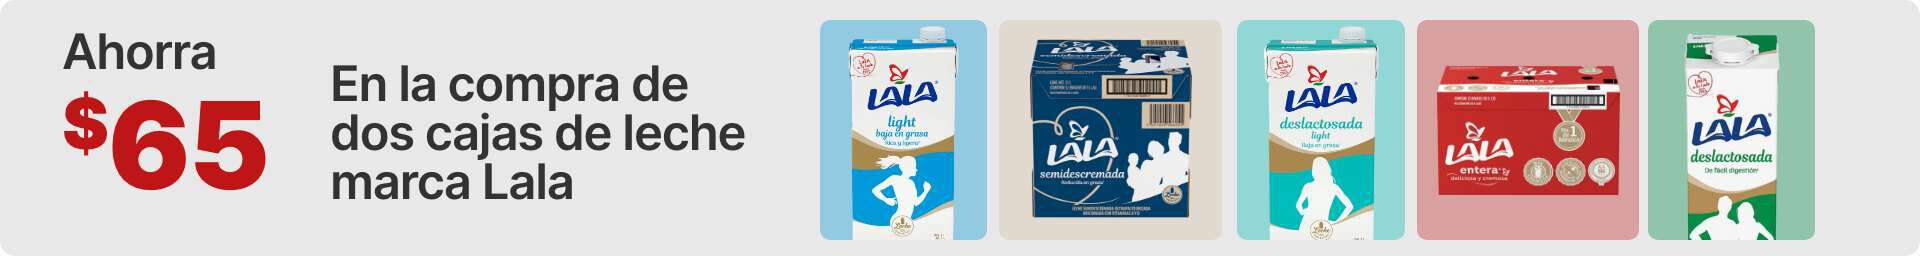 Ahora $65 en la compra de dos cajas de leche marca LALA